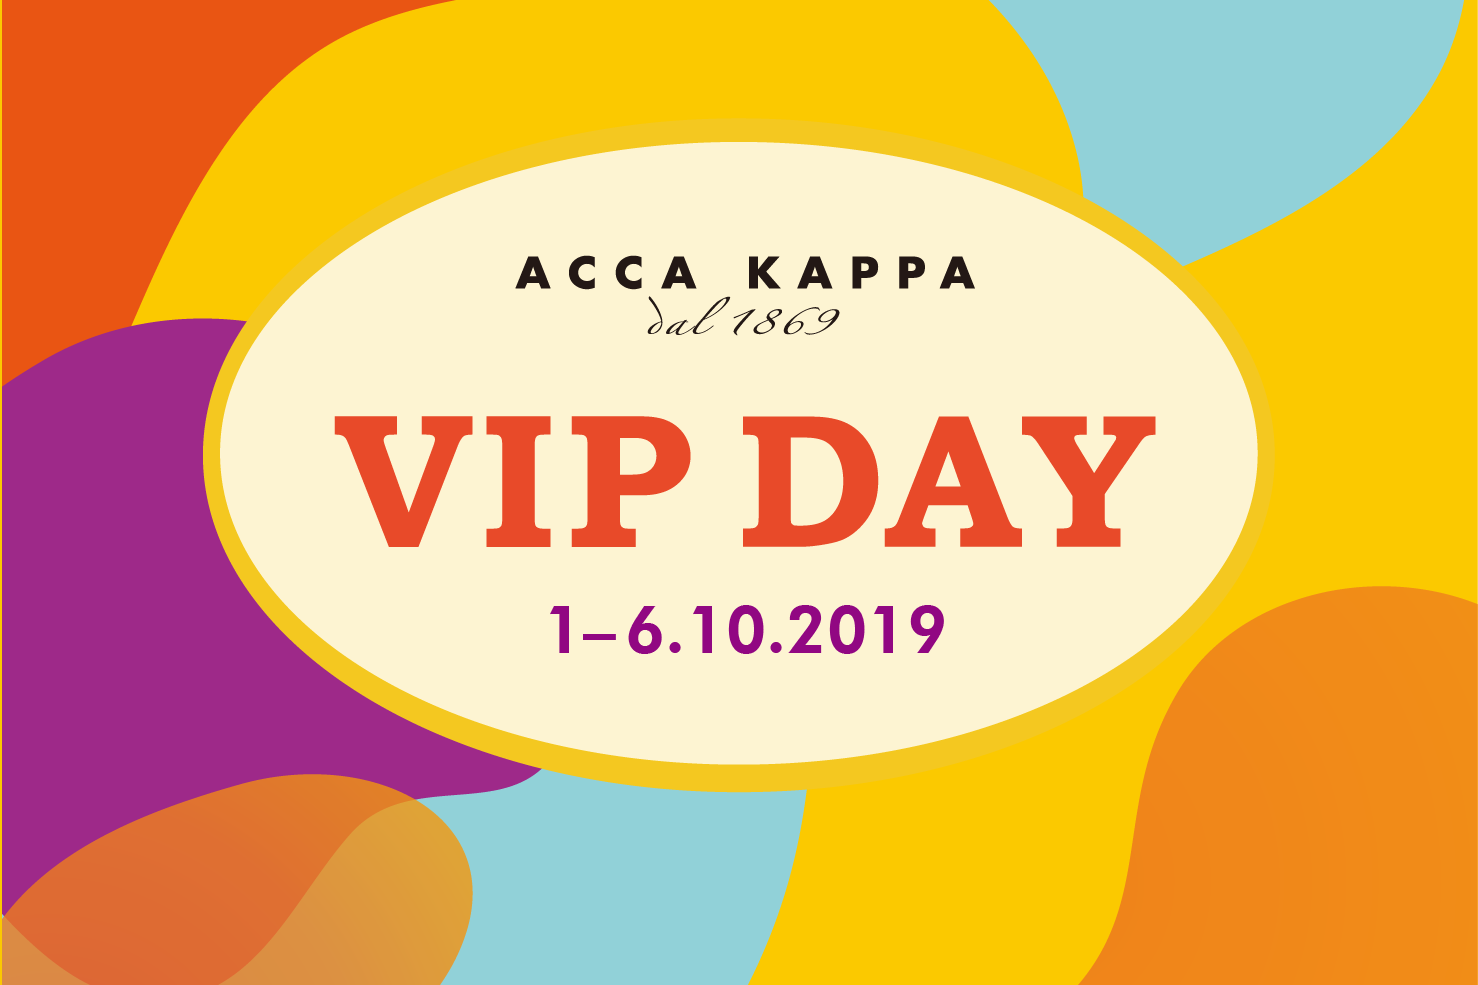 【ACCA KAPPA VIP DAY購物日：多重獨家購物優惠】 各位會員最期待的VIP Day將於明天正式展開，現在就率先預覽一系列由ACCA KAPPA精心準備的驚喜購物優惠！